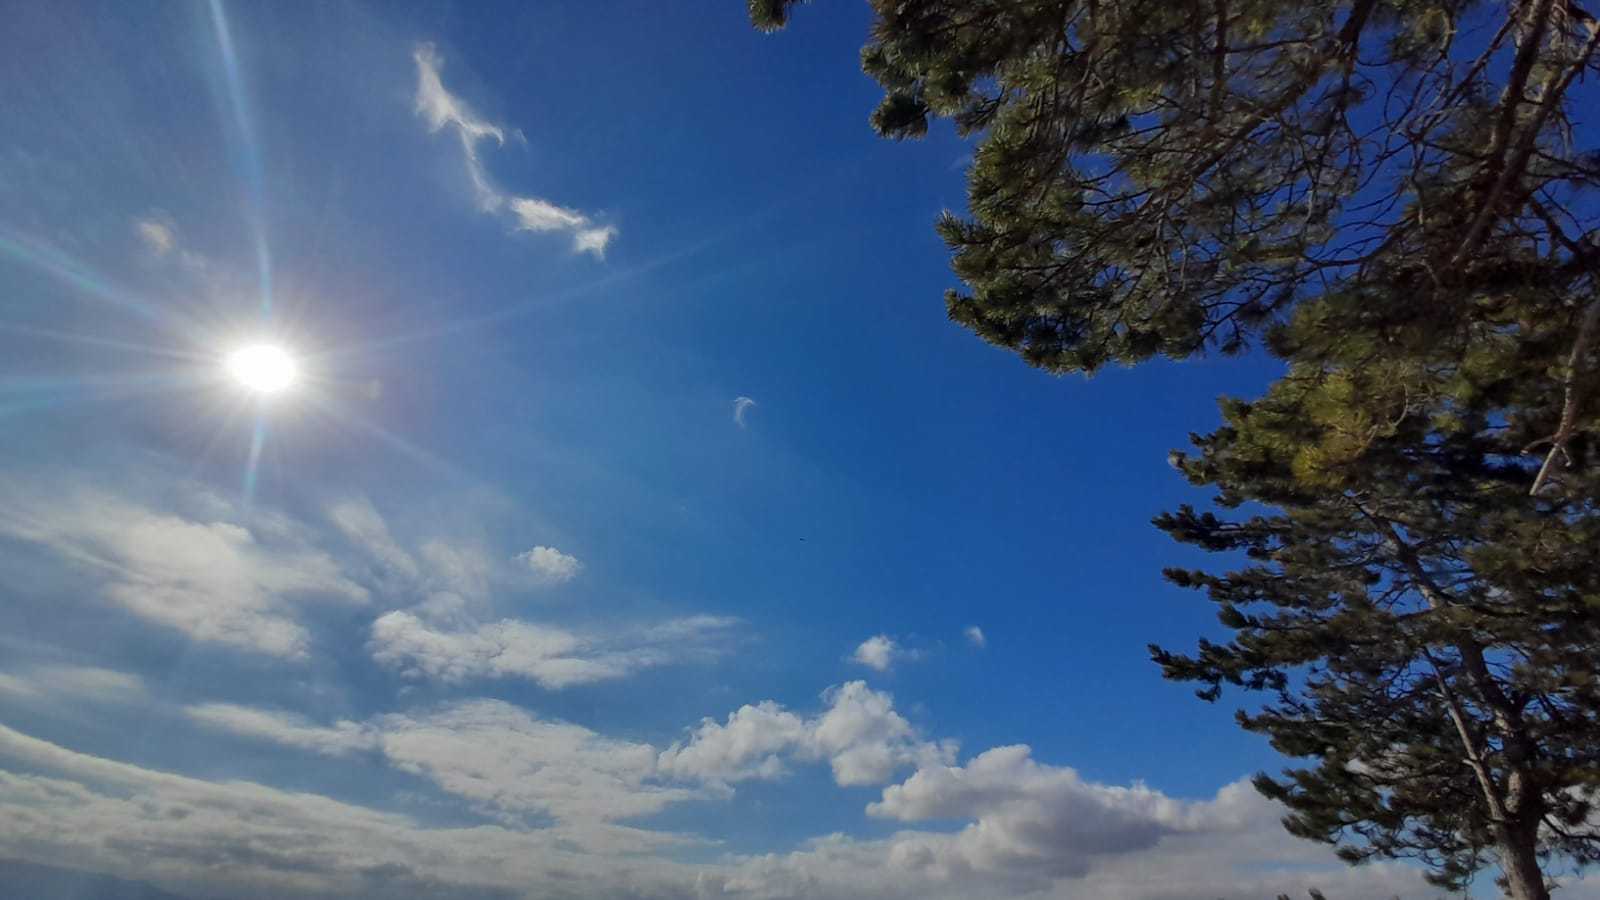 Meteo Agrigento: oggi martedì 19 Settembre poco nuvoloso per velature.